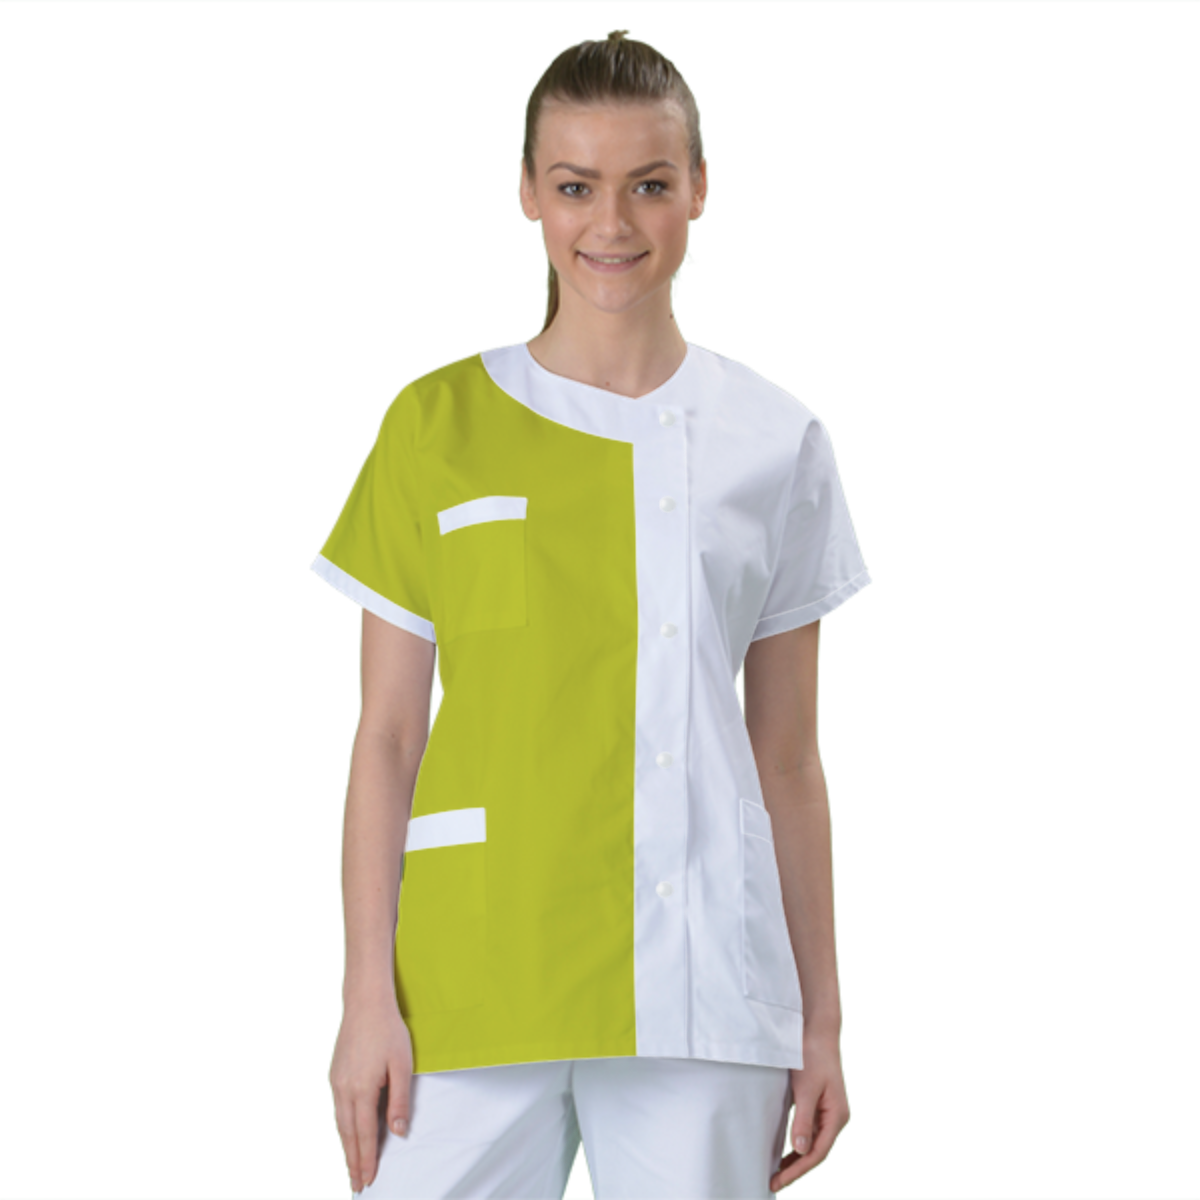 blouse-medicale-col-carre-a-personnaliser acheté - par Valérie - le 18-09-2021